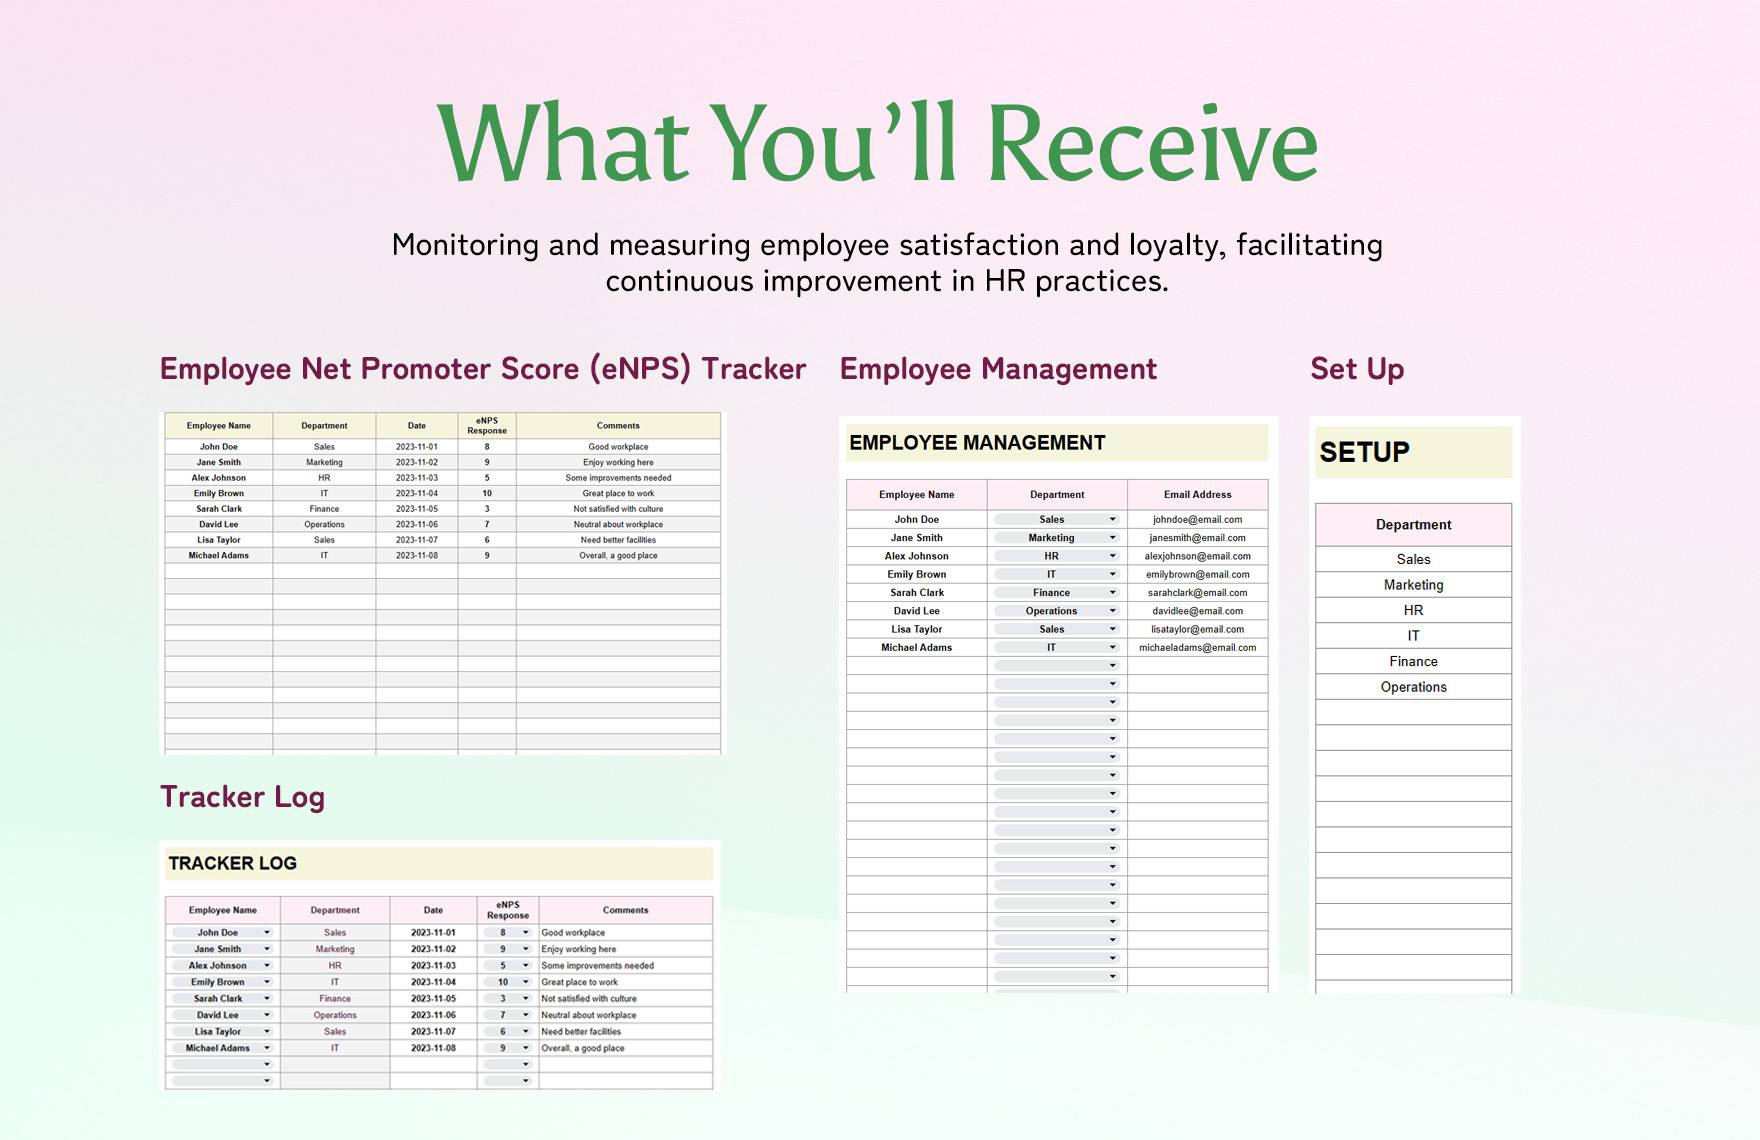 Employee Net Promoter Score (eNPS) Tracker HR Template